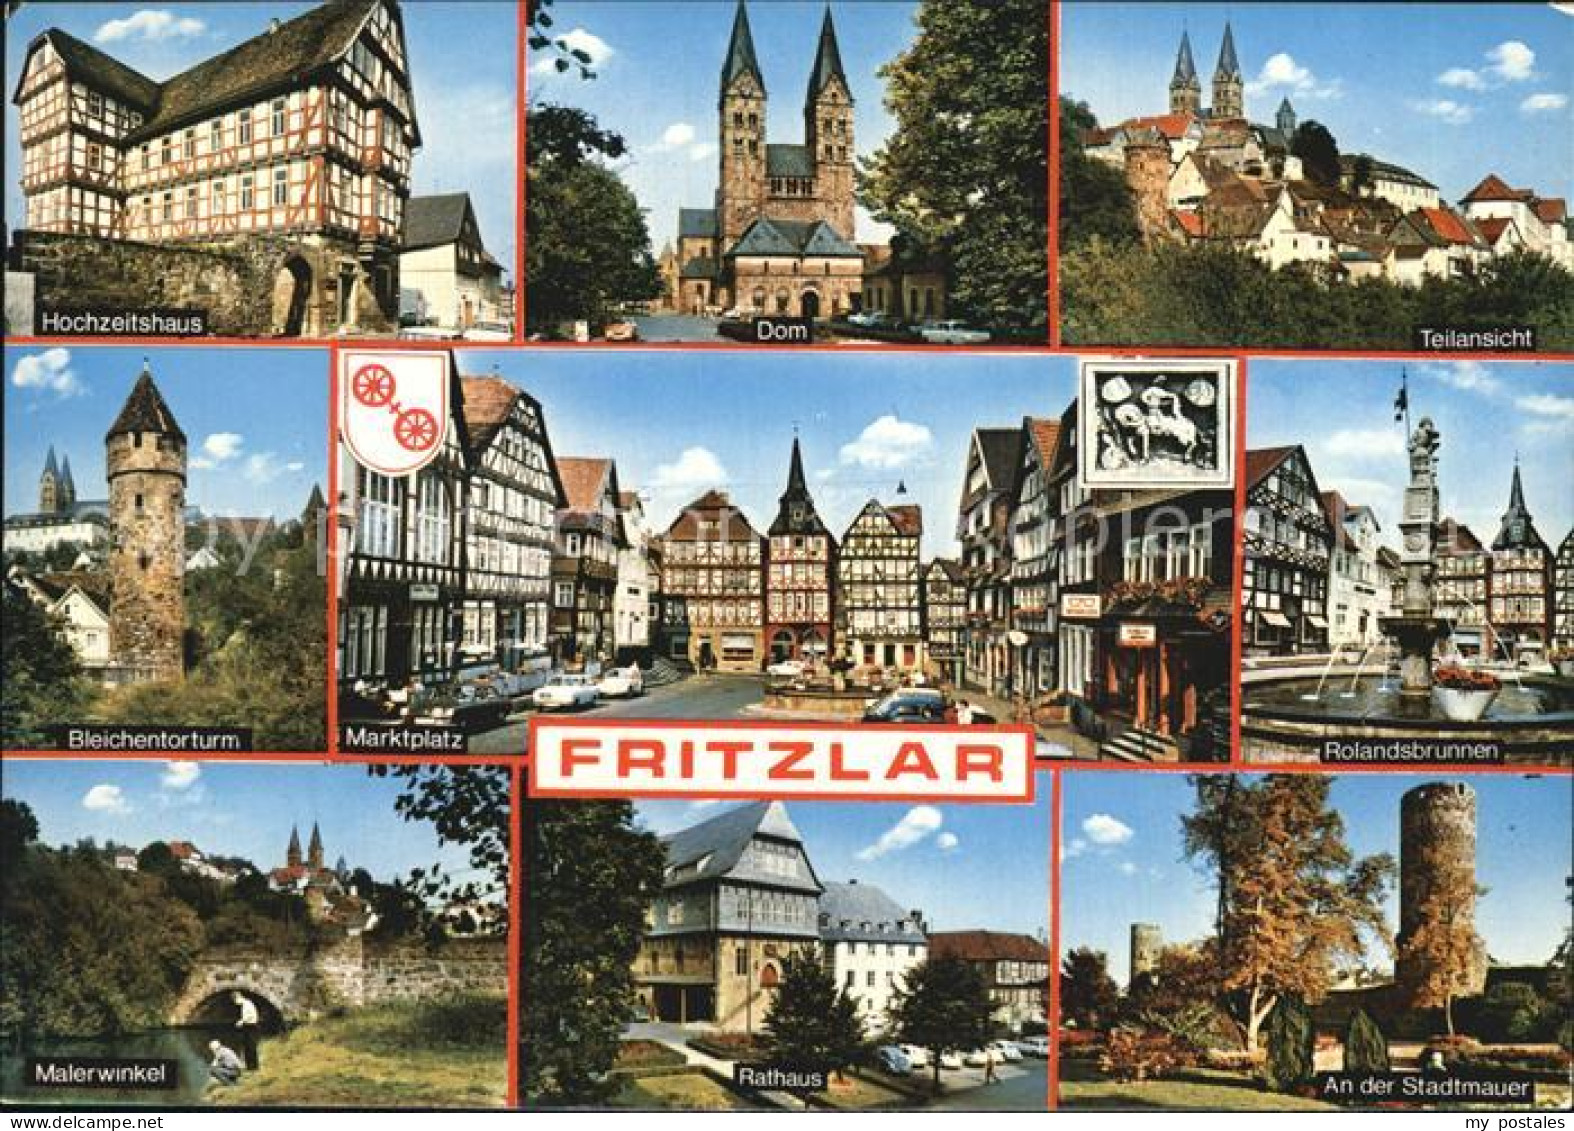 72415704 Fritzlar Hochzeitshaus Dom Bleichentorturm Marktplatz Fachwerkhaeuser R - Fritzlar